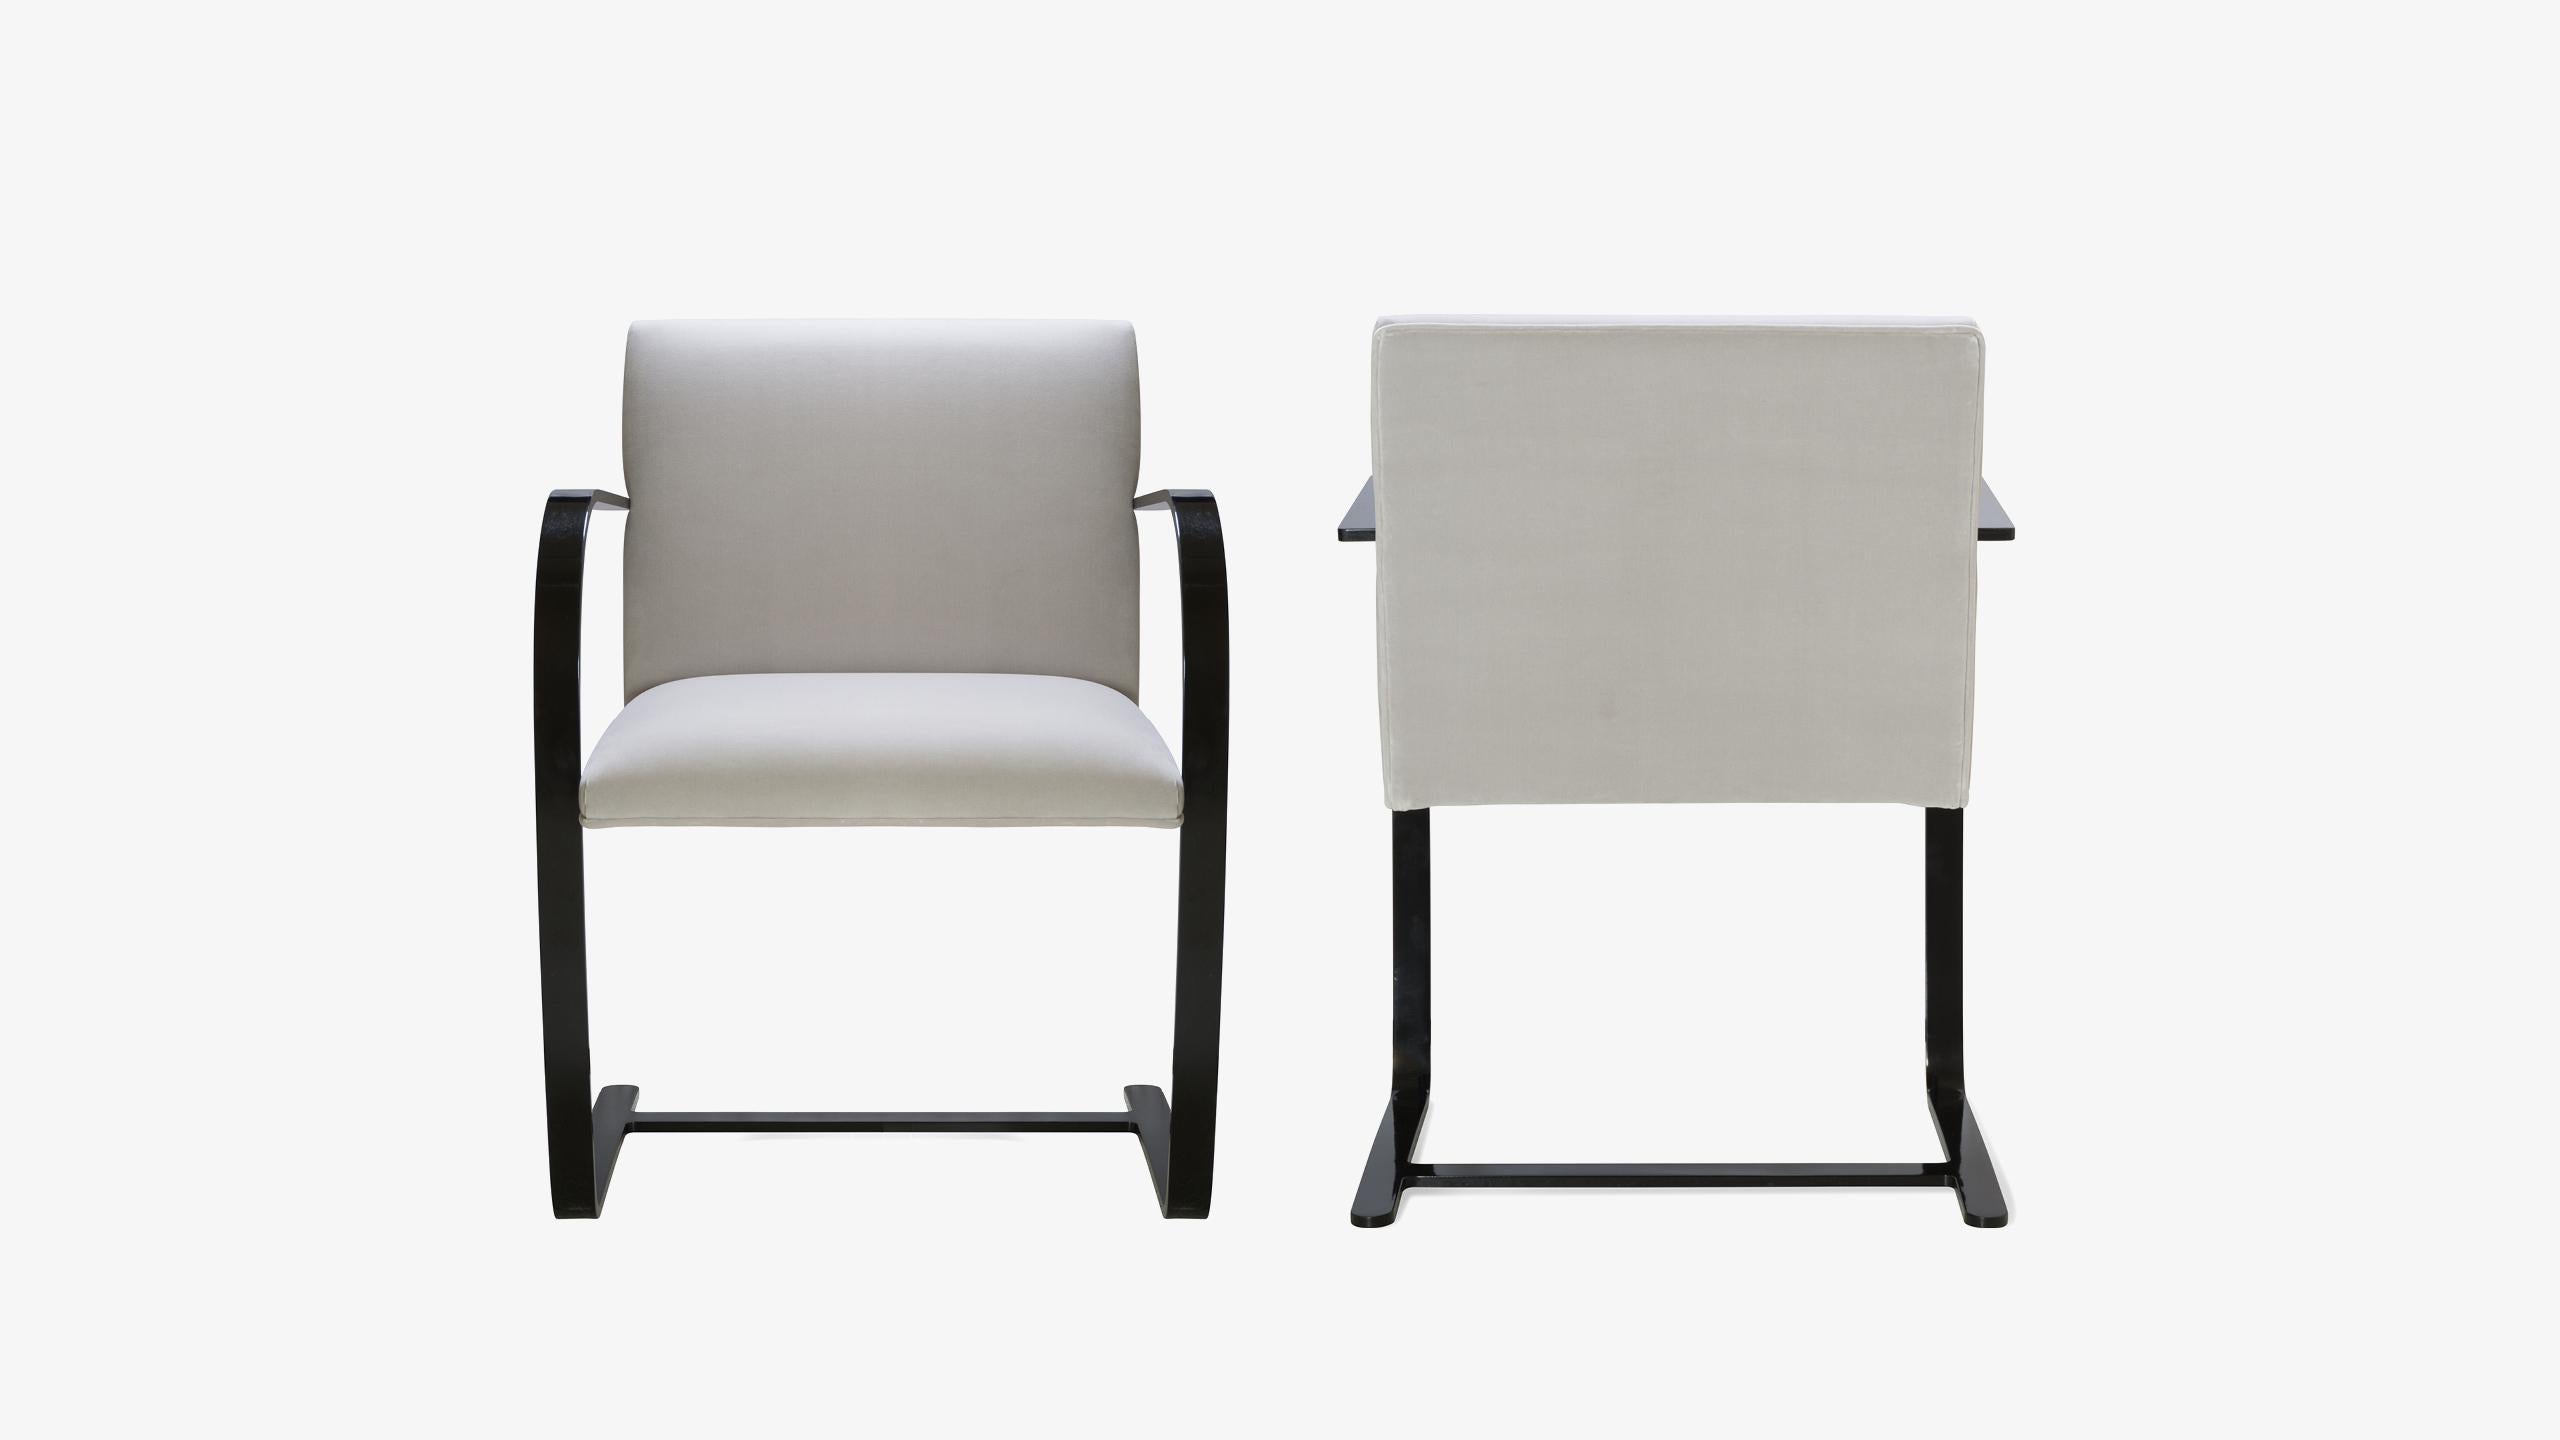 La définition du minimalisme dans un design singulier, réalisé par le grand Ludwig Mies van der Rohe en 1929 ; la chaise à barre plate Brno est exactement cela. Nous avons édité ces itérations contemporaines d'authentiques originaux d'une manière